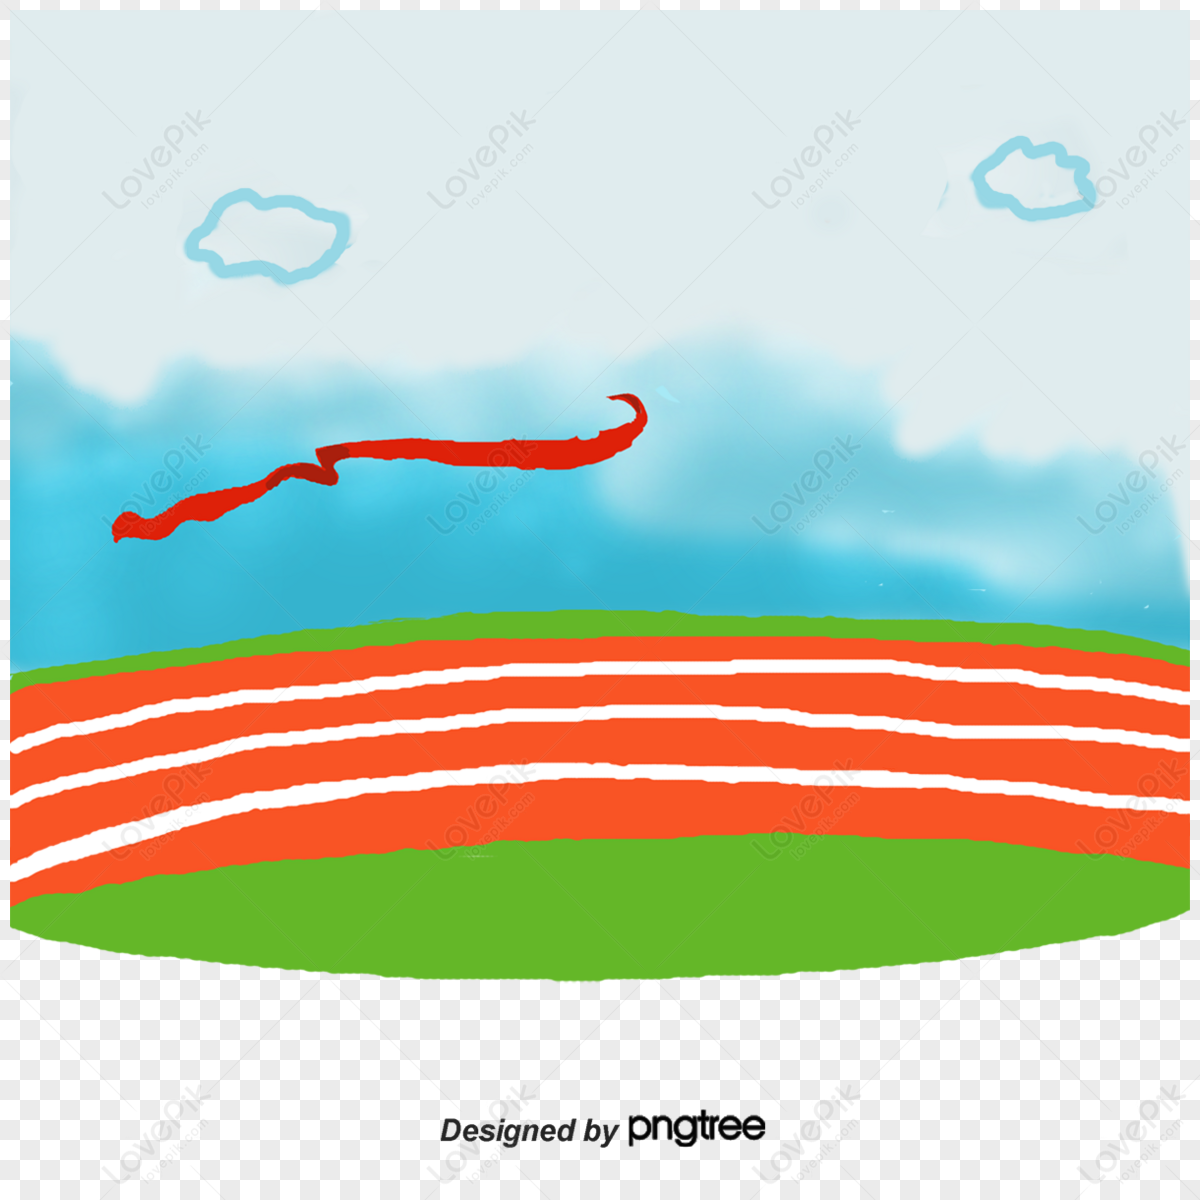 orange track and the finish line,end,orange lines png transparent image